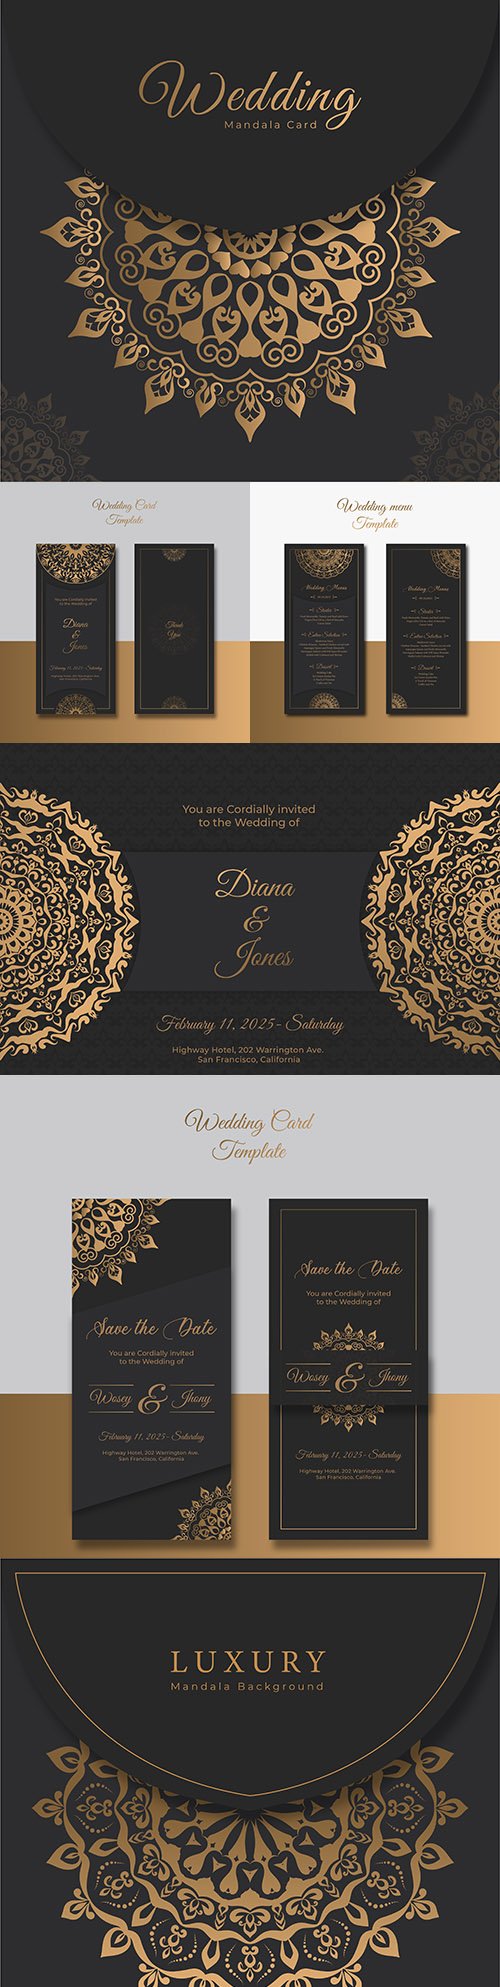 Elegant wedding invitation luxury template mandala